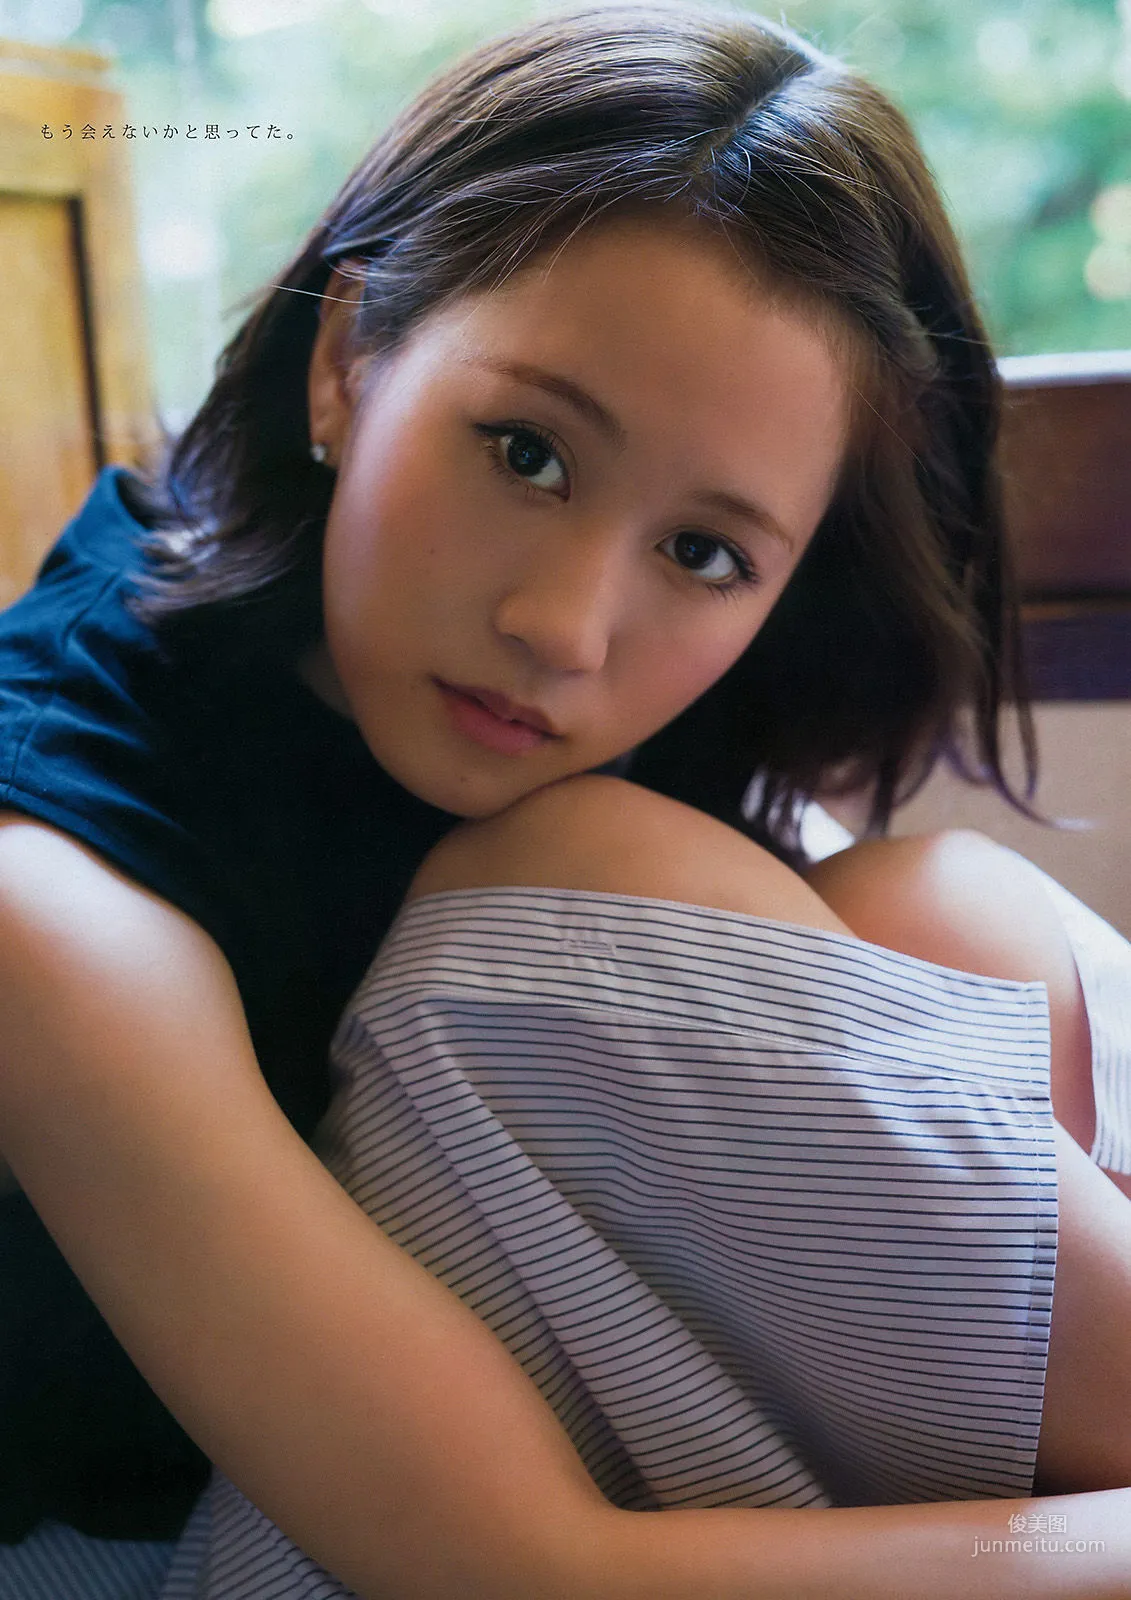 [Young Magazine] 前田敦子 小間千代 2015年No.34 写真杂志6